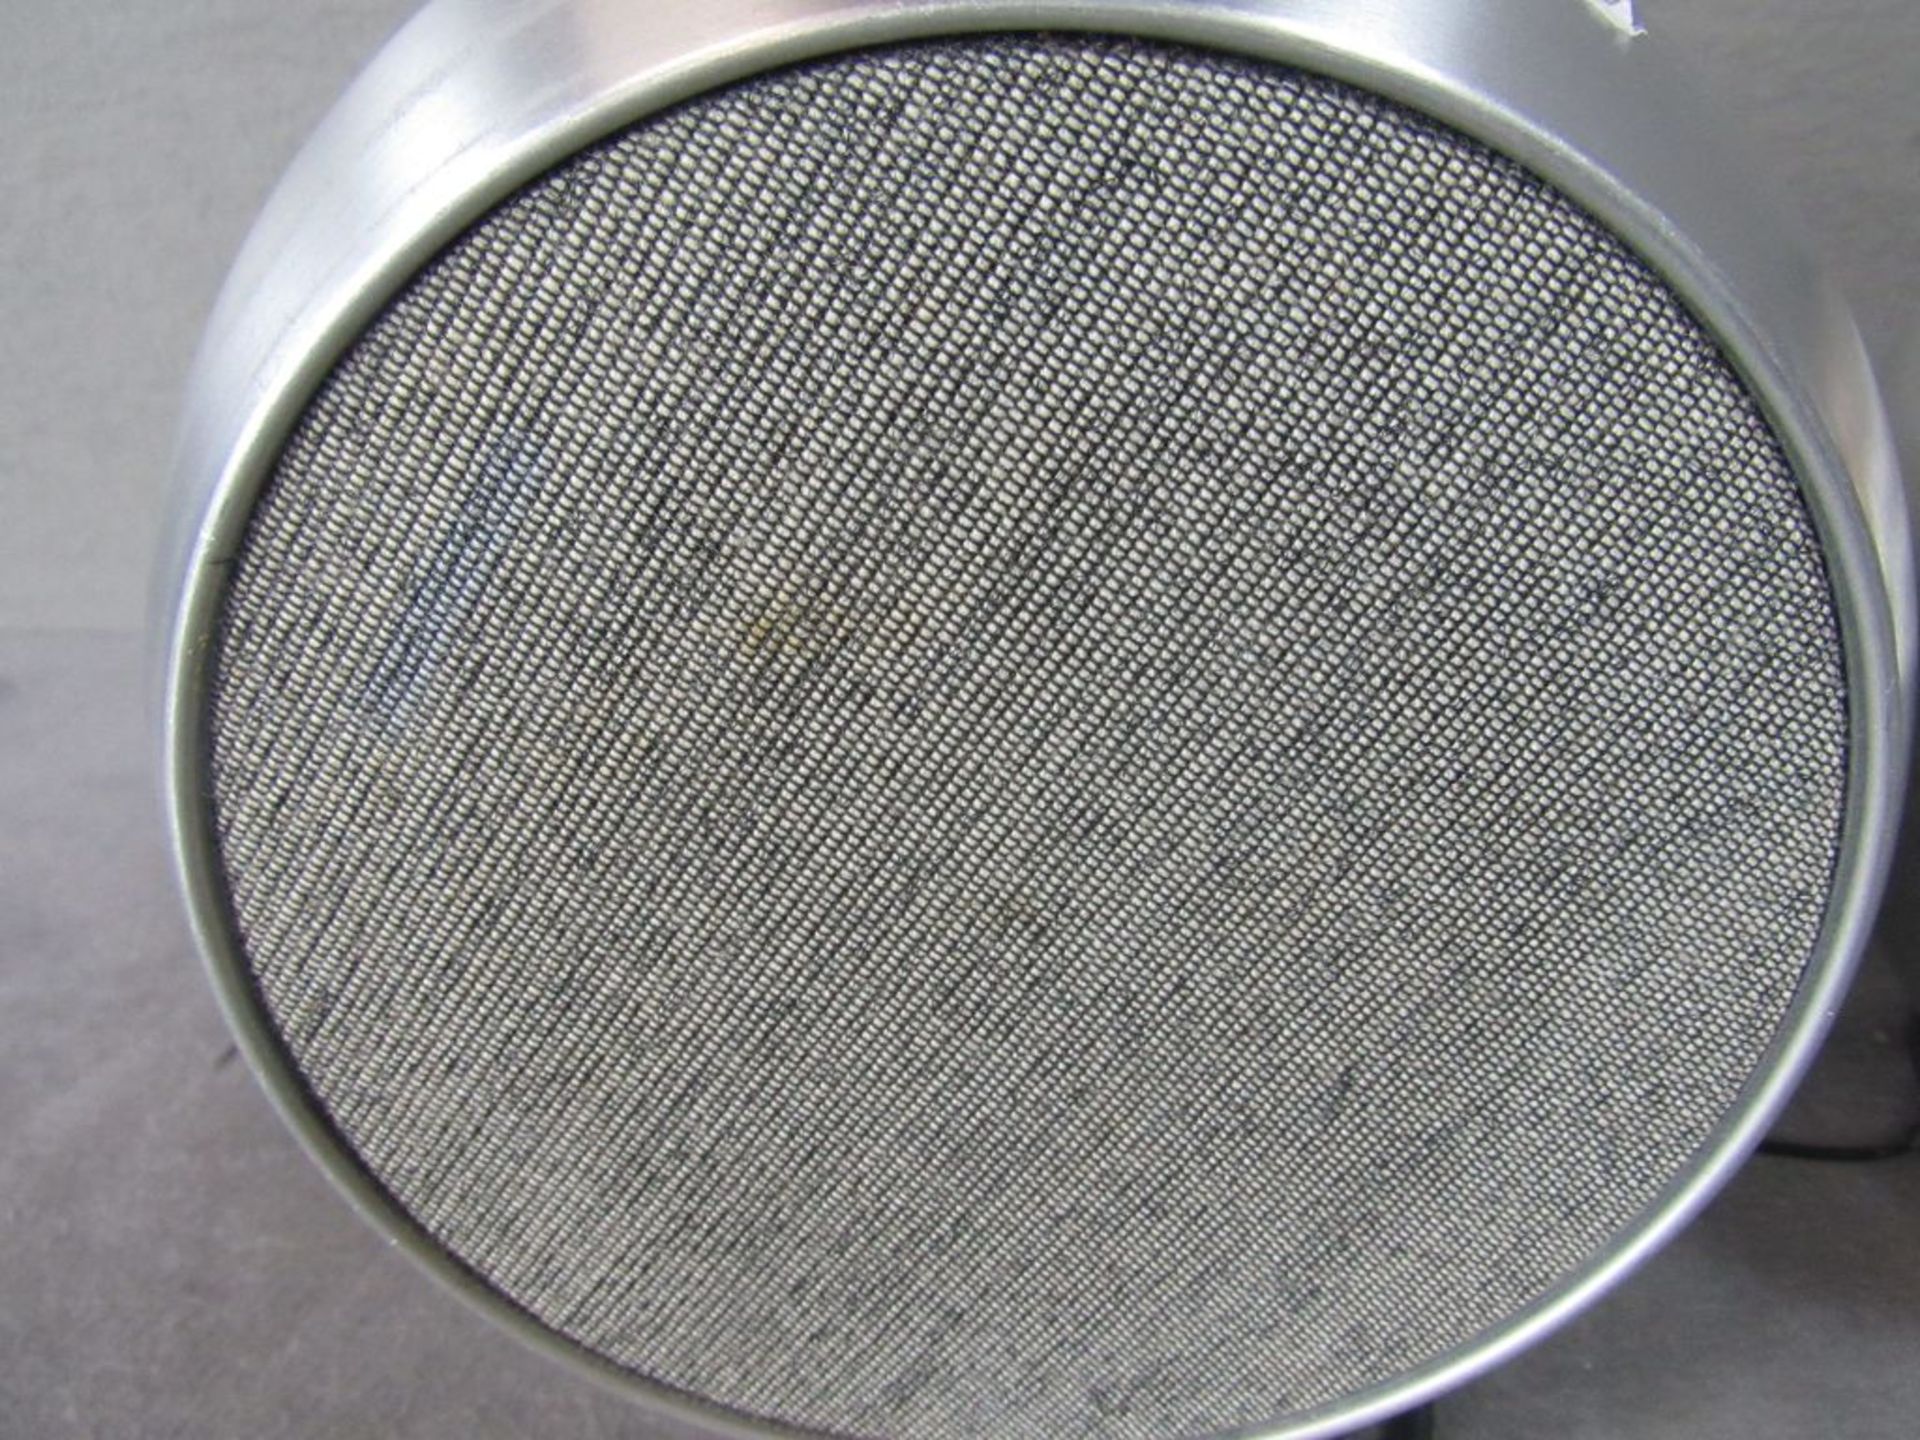 Kugellautsprecher 60er Jahre Telefunken gebürstetes Aluminium 19cm Durchmesser - Bild 2 aus 7